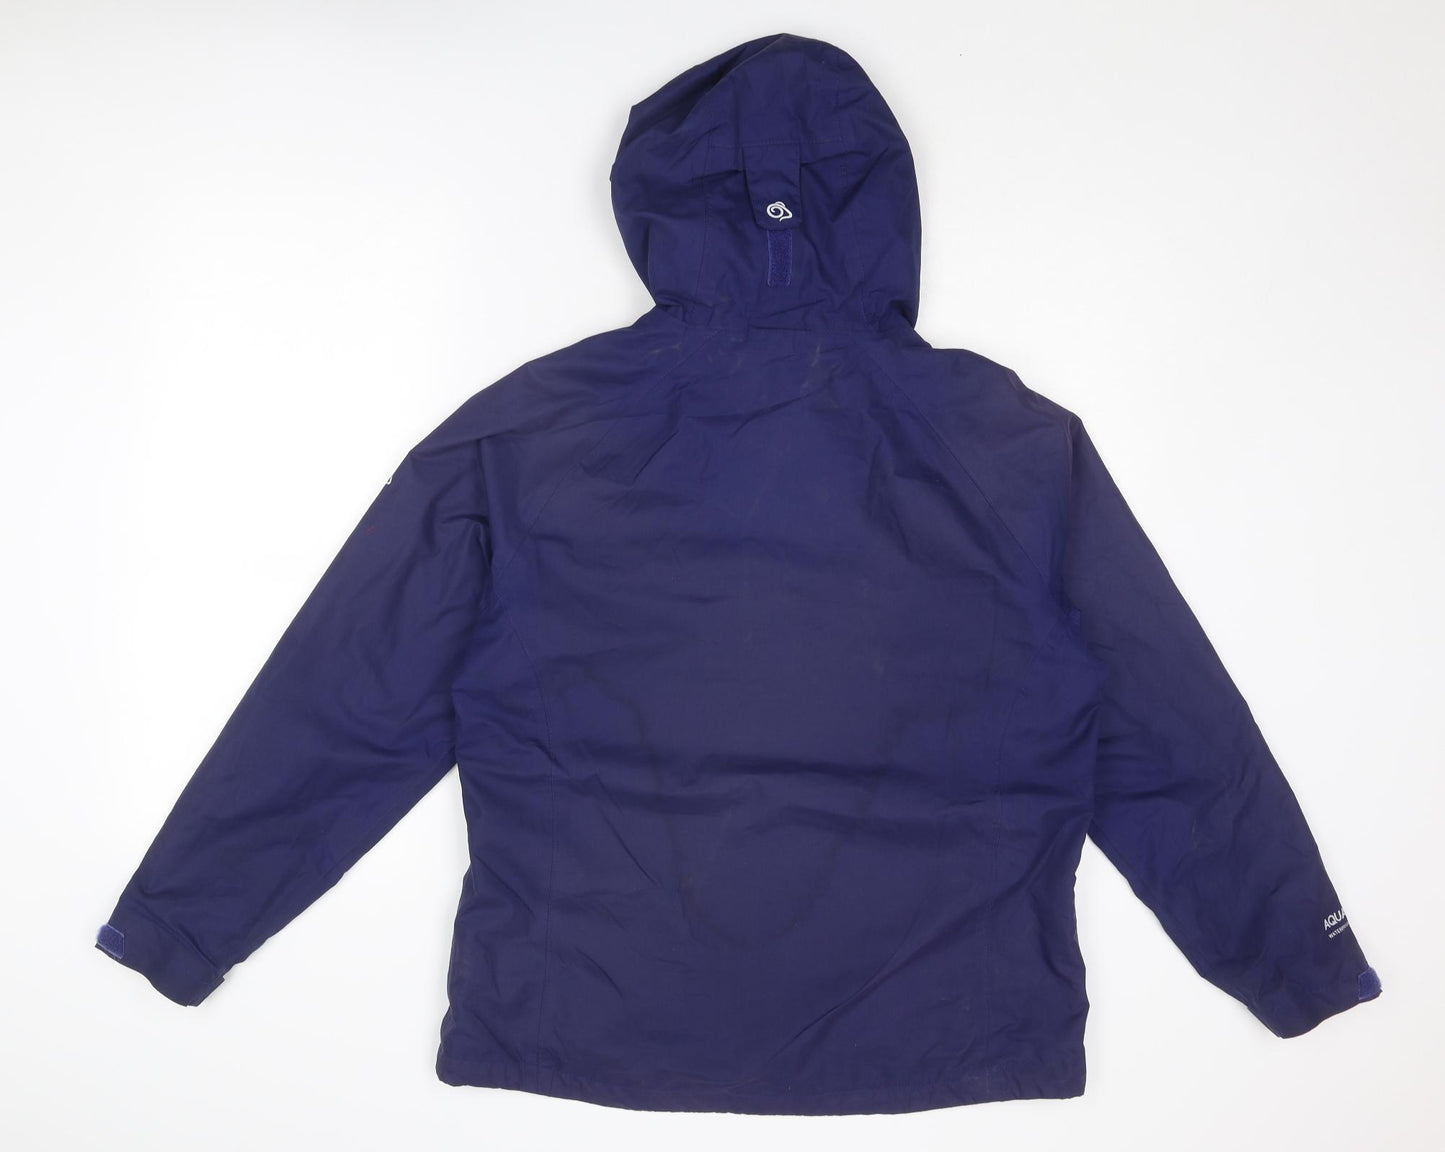 Craghoppers Womens Blue Windbreaker Jacket Size 14 Zip